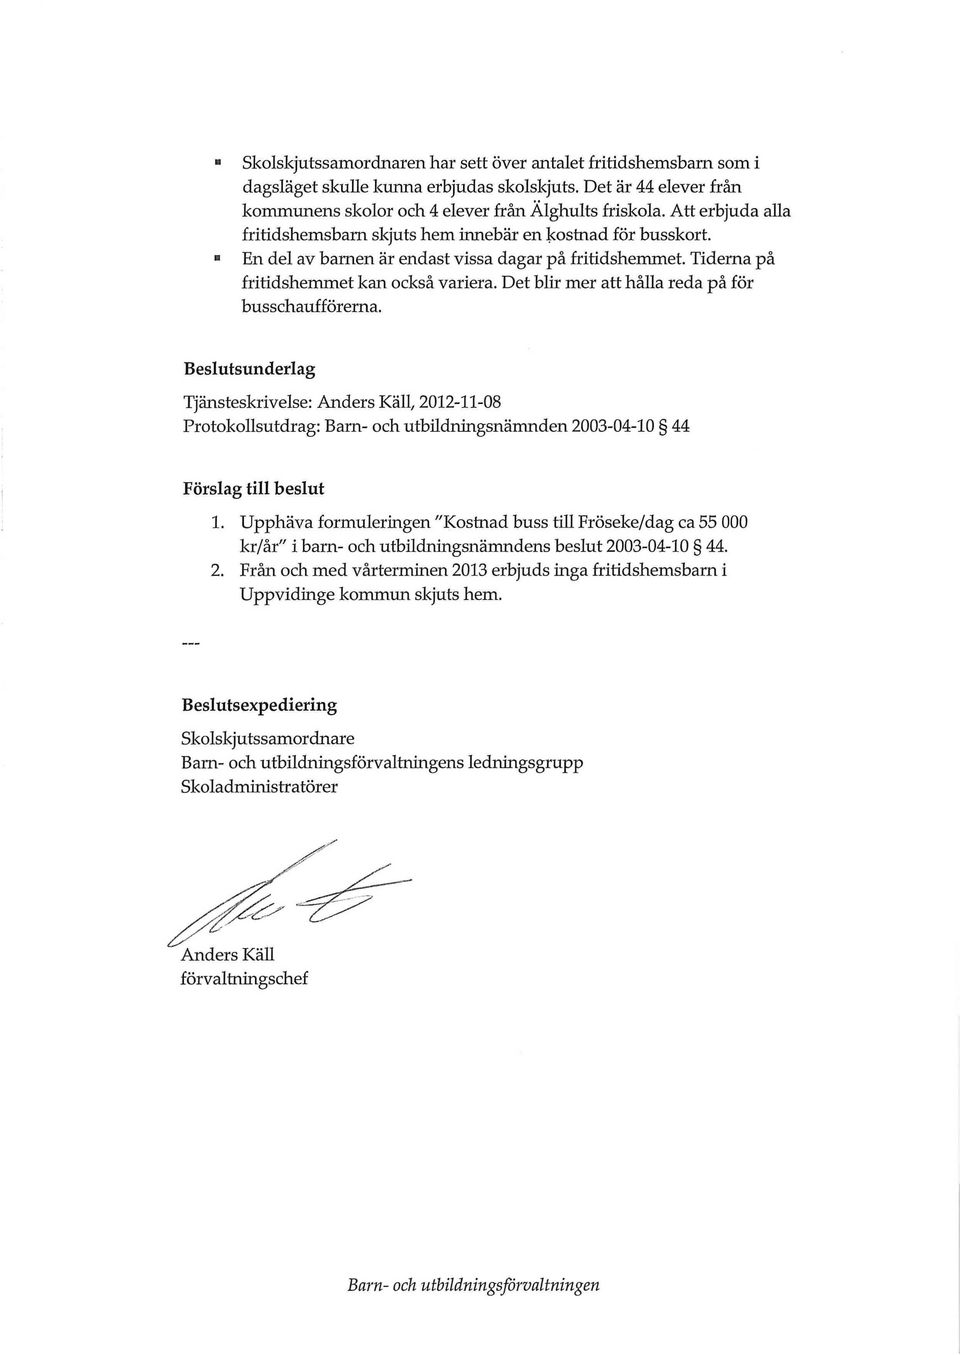 Det blir mer att hålla reda på för busschaufförerna. Beslutsunderlag Tjänsteskrivelse: Anders Käll, 2012-11-08 Protokollsutdrag: Bam- och utbudningsnämnden 2003-04-10 44 Förslag till beslut 1.